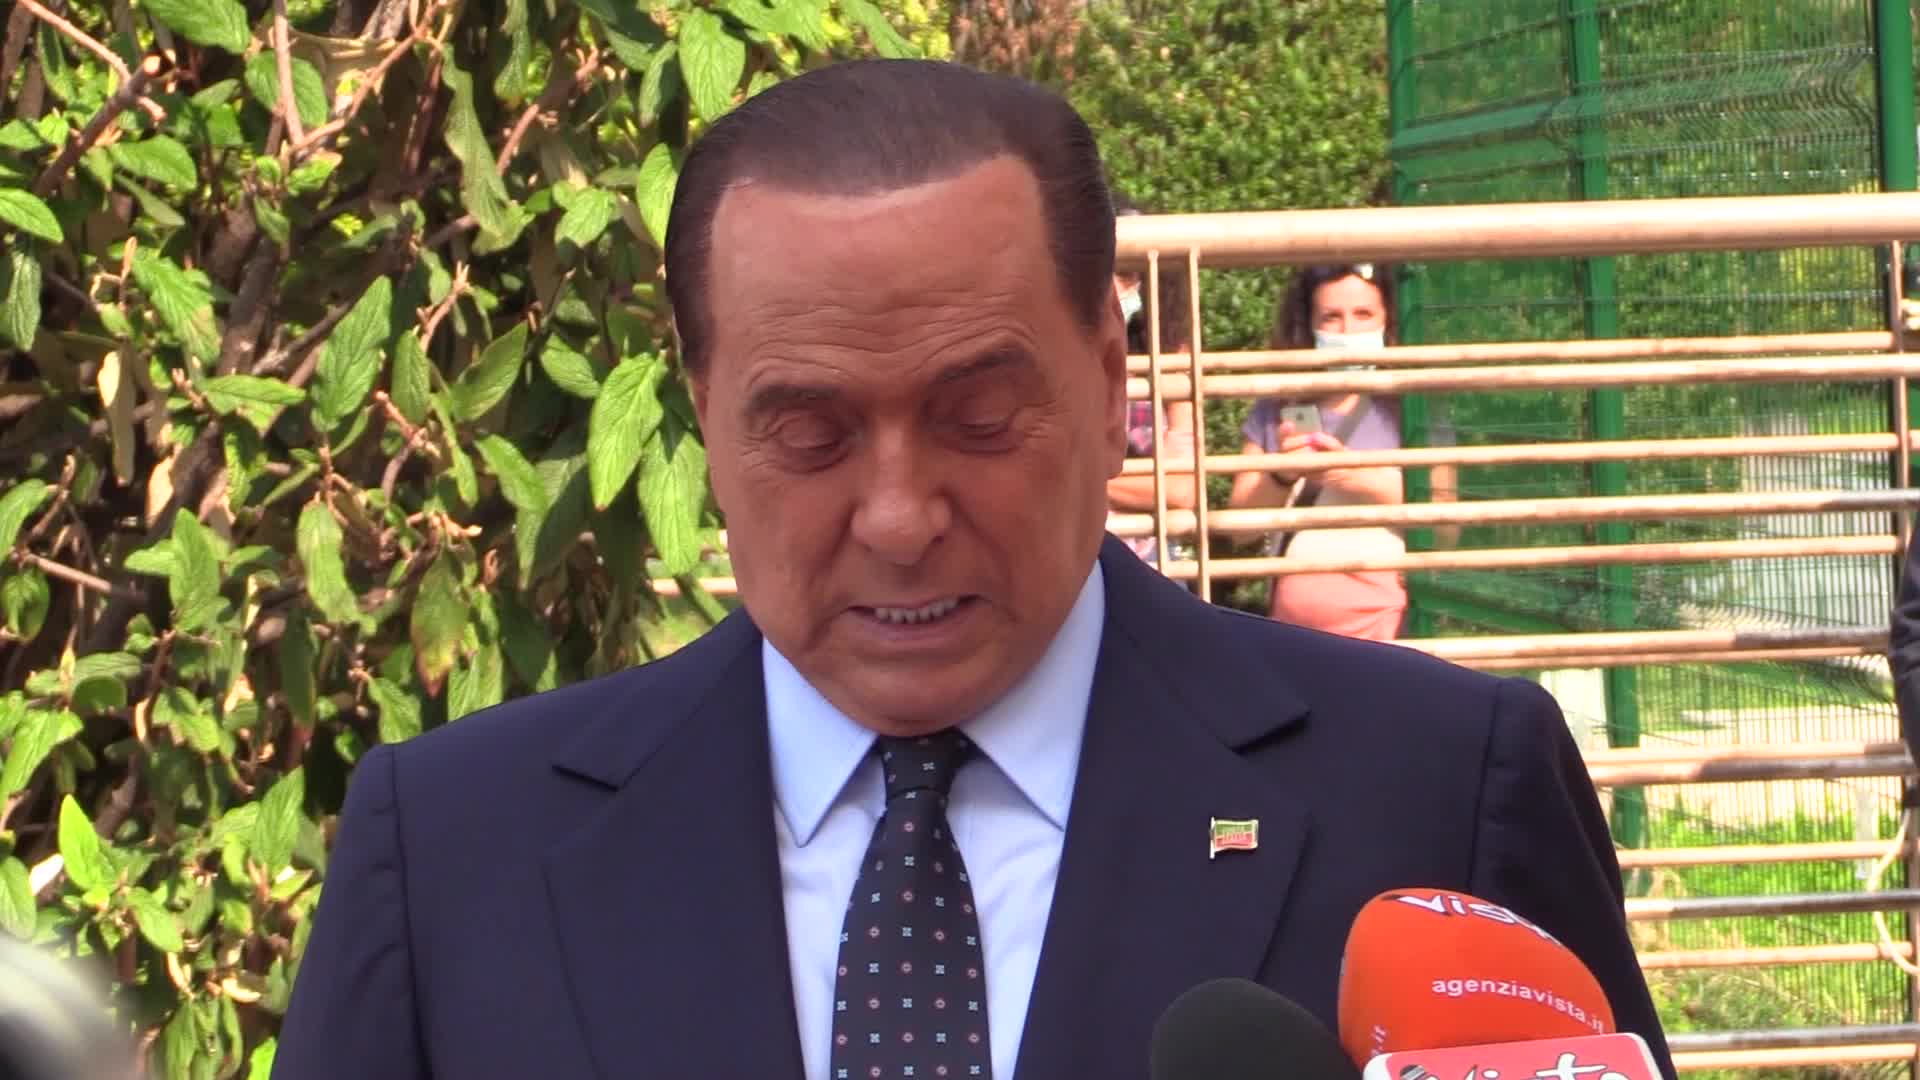 Scuola, l'appello di Berlusconi a studenti: "Rispettate le regole"